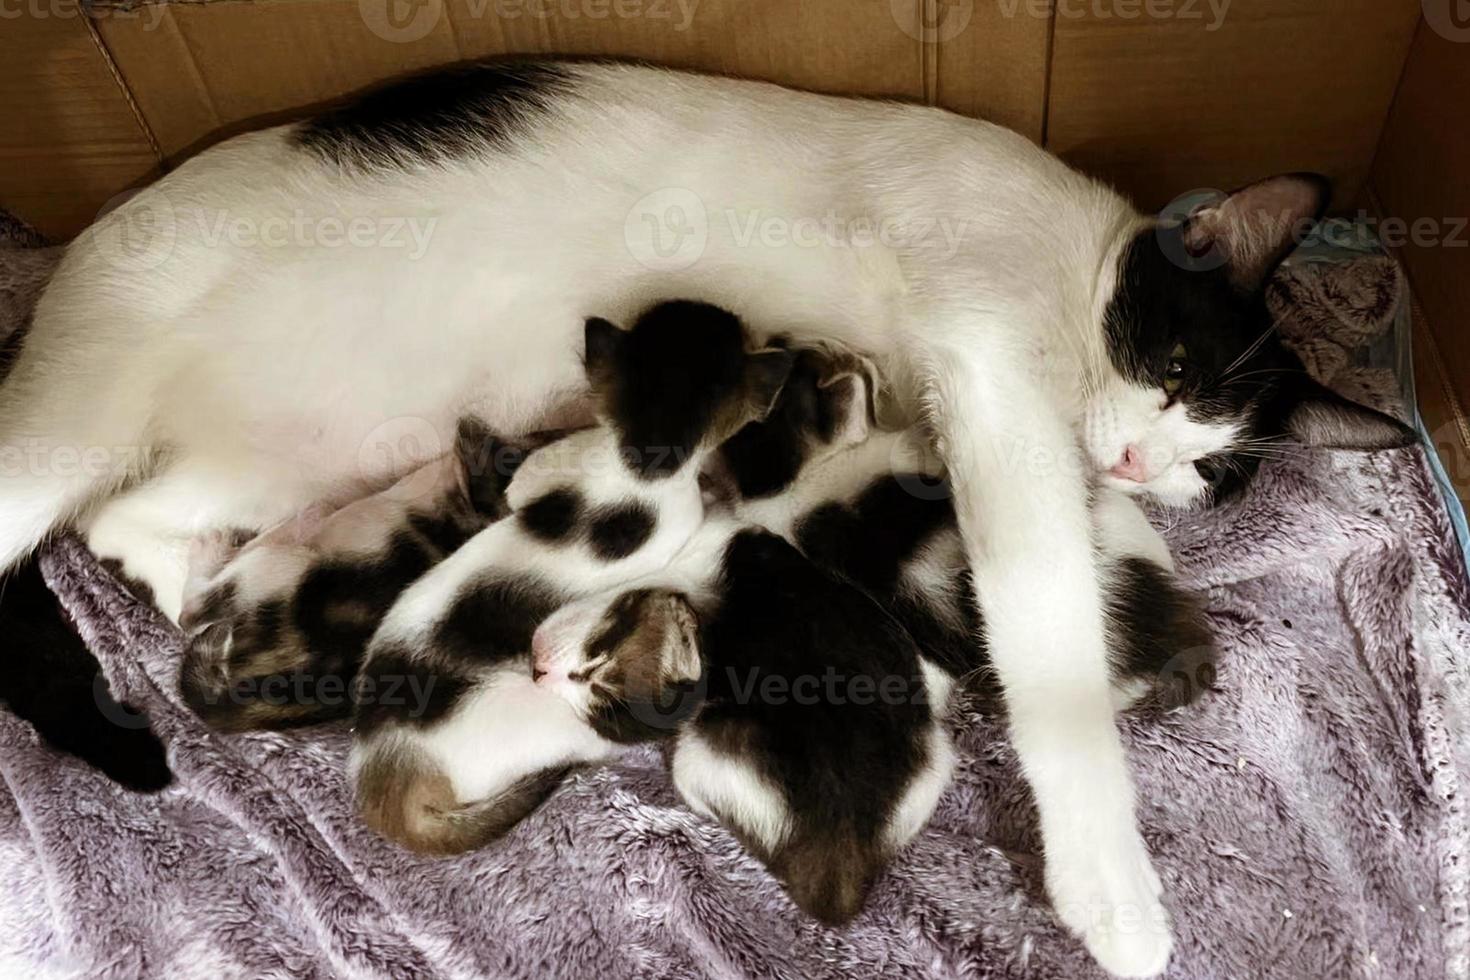 gato amamantando a sus pequeños gatitos, de cerca. madre gato esponjoso embarazada dar a luz. gatitos recién nacidos bebiendo leche del pecho de su madre. gatitos recién nacidos. foto